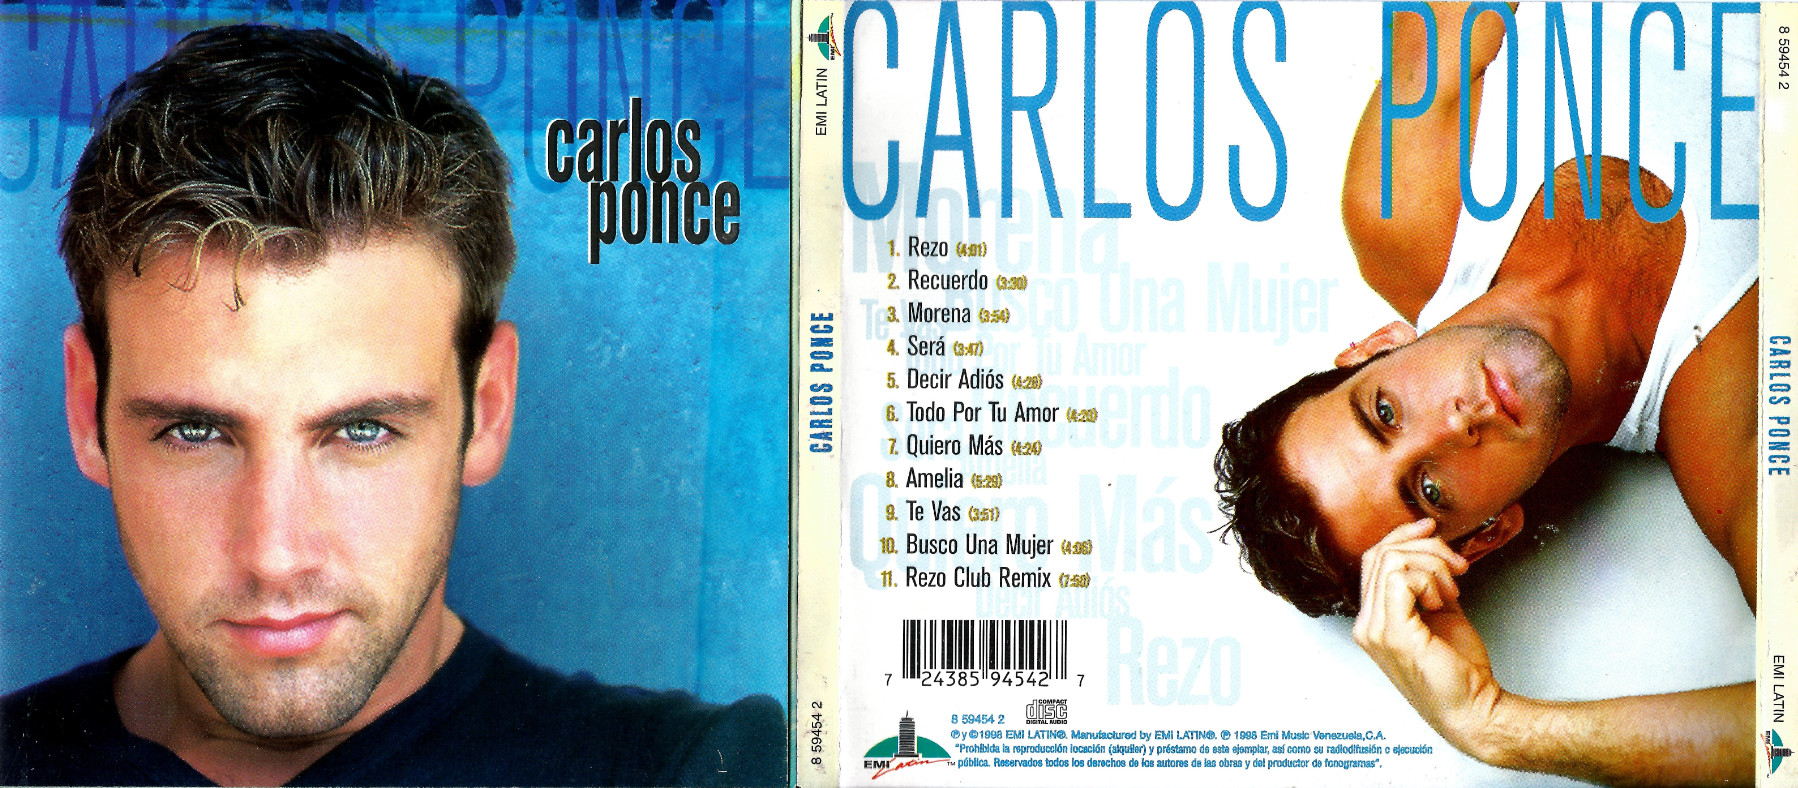 CARLOS PONCE - CARLOS PONCE (1996) CARLOS%2BPONCE%2B-%2BCARLOS%2B%2BPONCE%2B%25281996%2529%2528DJ%2BROBERT%2529